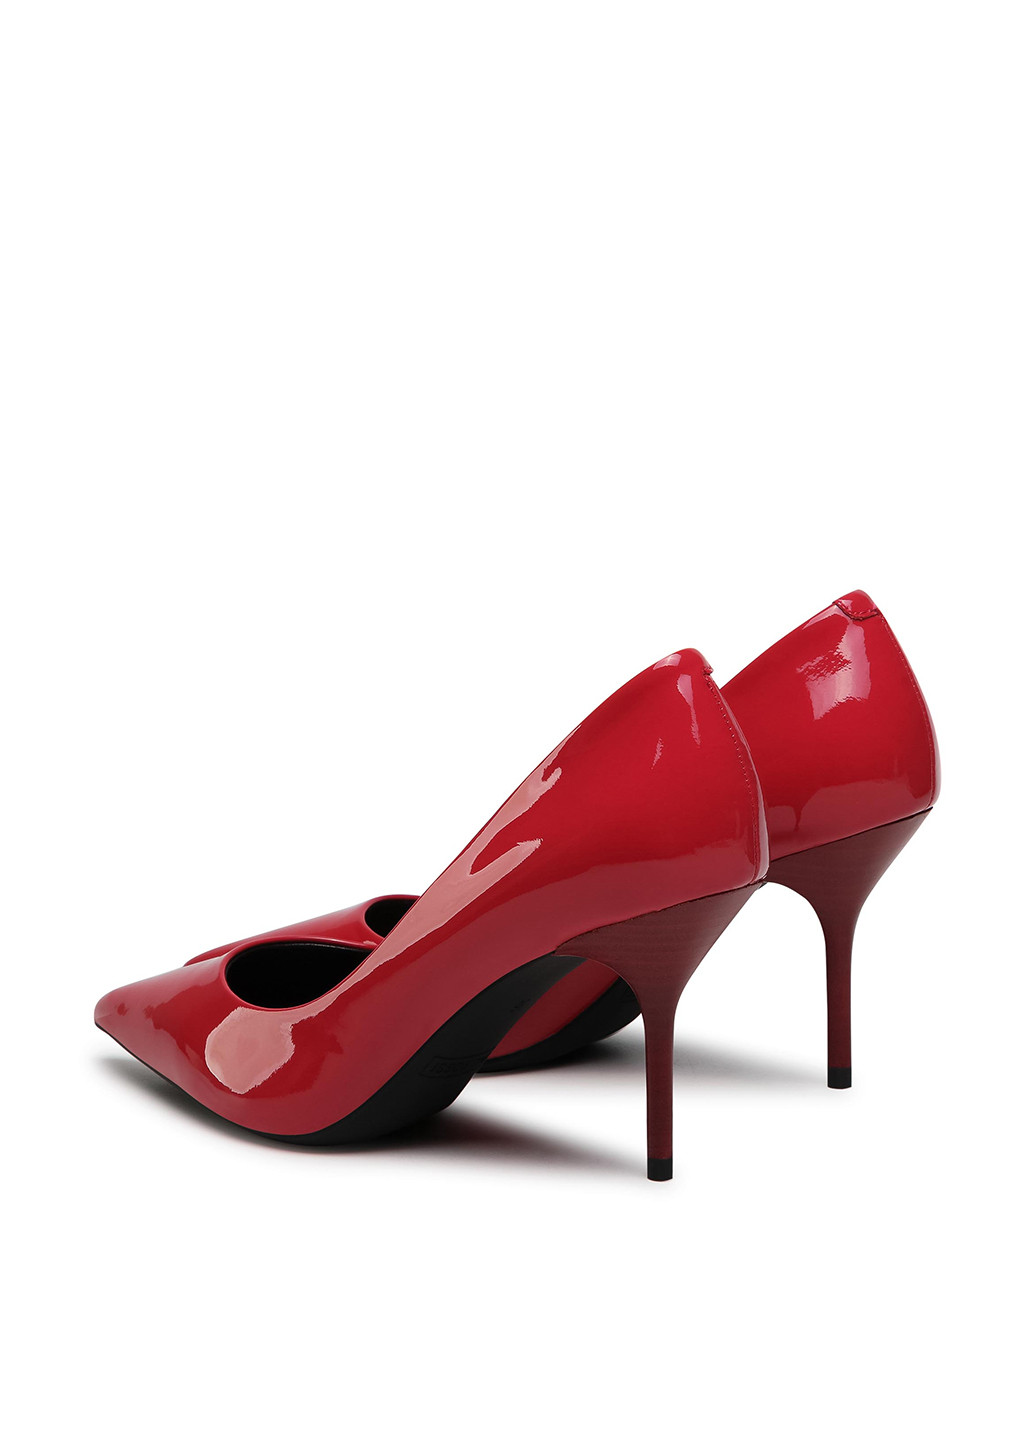 Туфлі V710-03-1 Gino Rossi туфлі-човники однотонні червоні кежуали